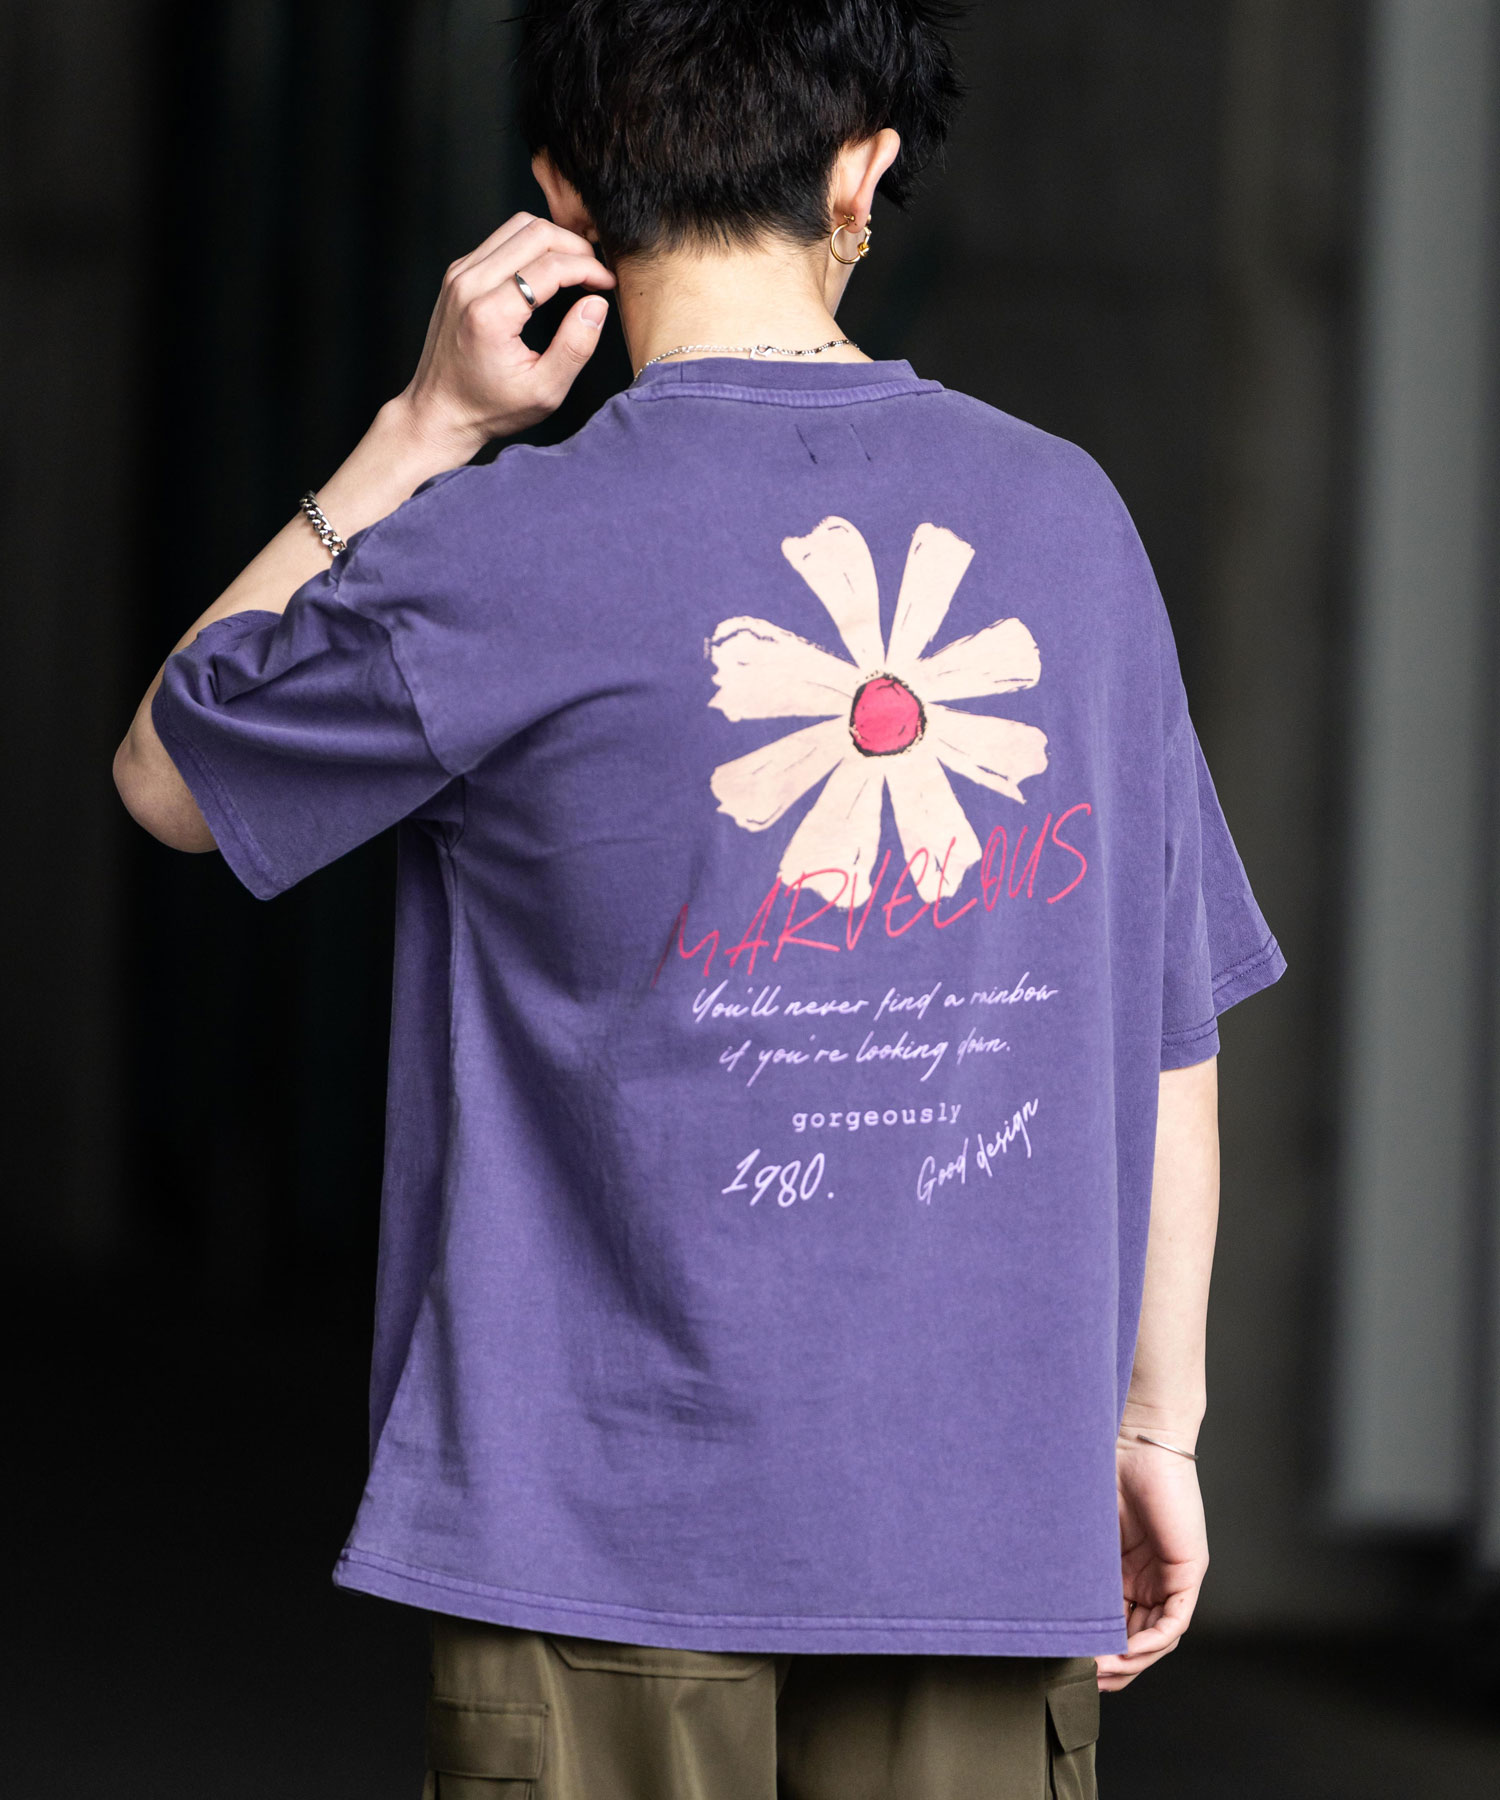 Tシャツ 半袖 バックプリント メンズ レディース カットソー クルーネック グラフィック FLOWER 花 ワンポイント ピグメント加工  ヴィンテージライク